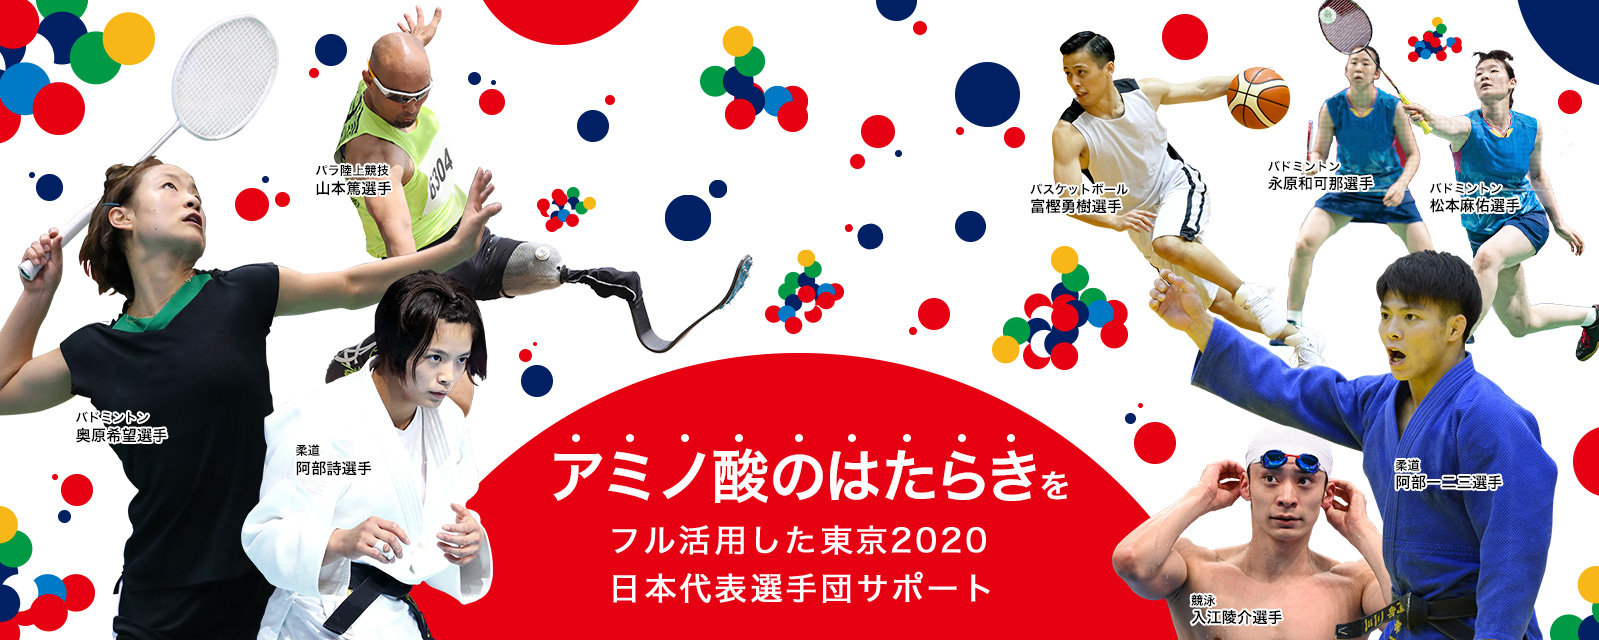 アミノ酸のはたらきをフル活用した東京2020日本代表選手団サポート